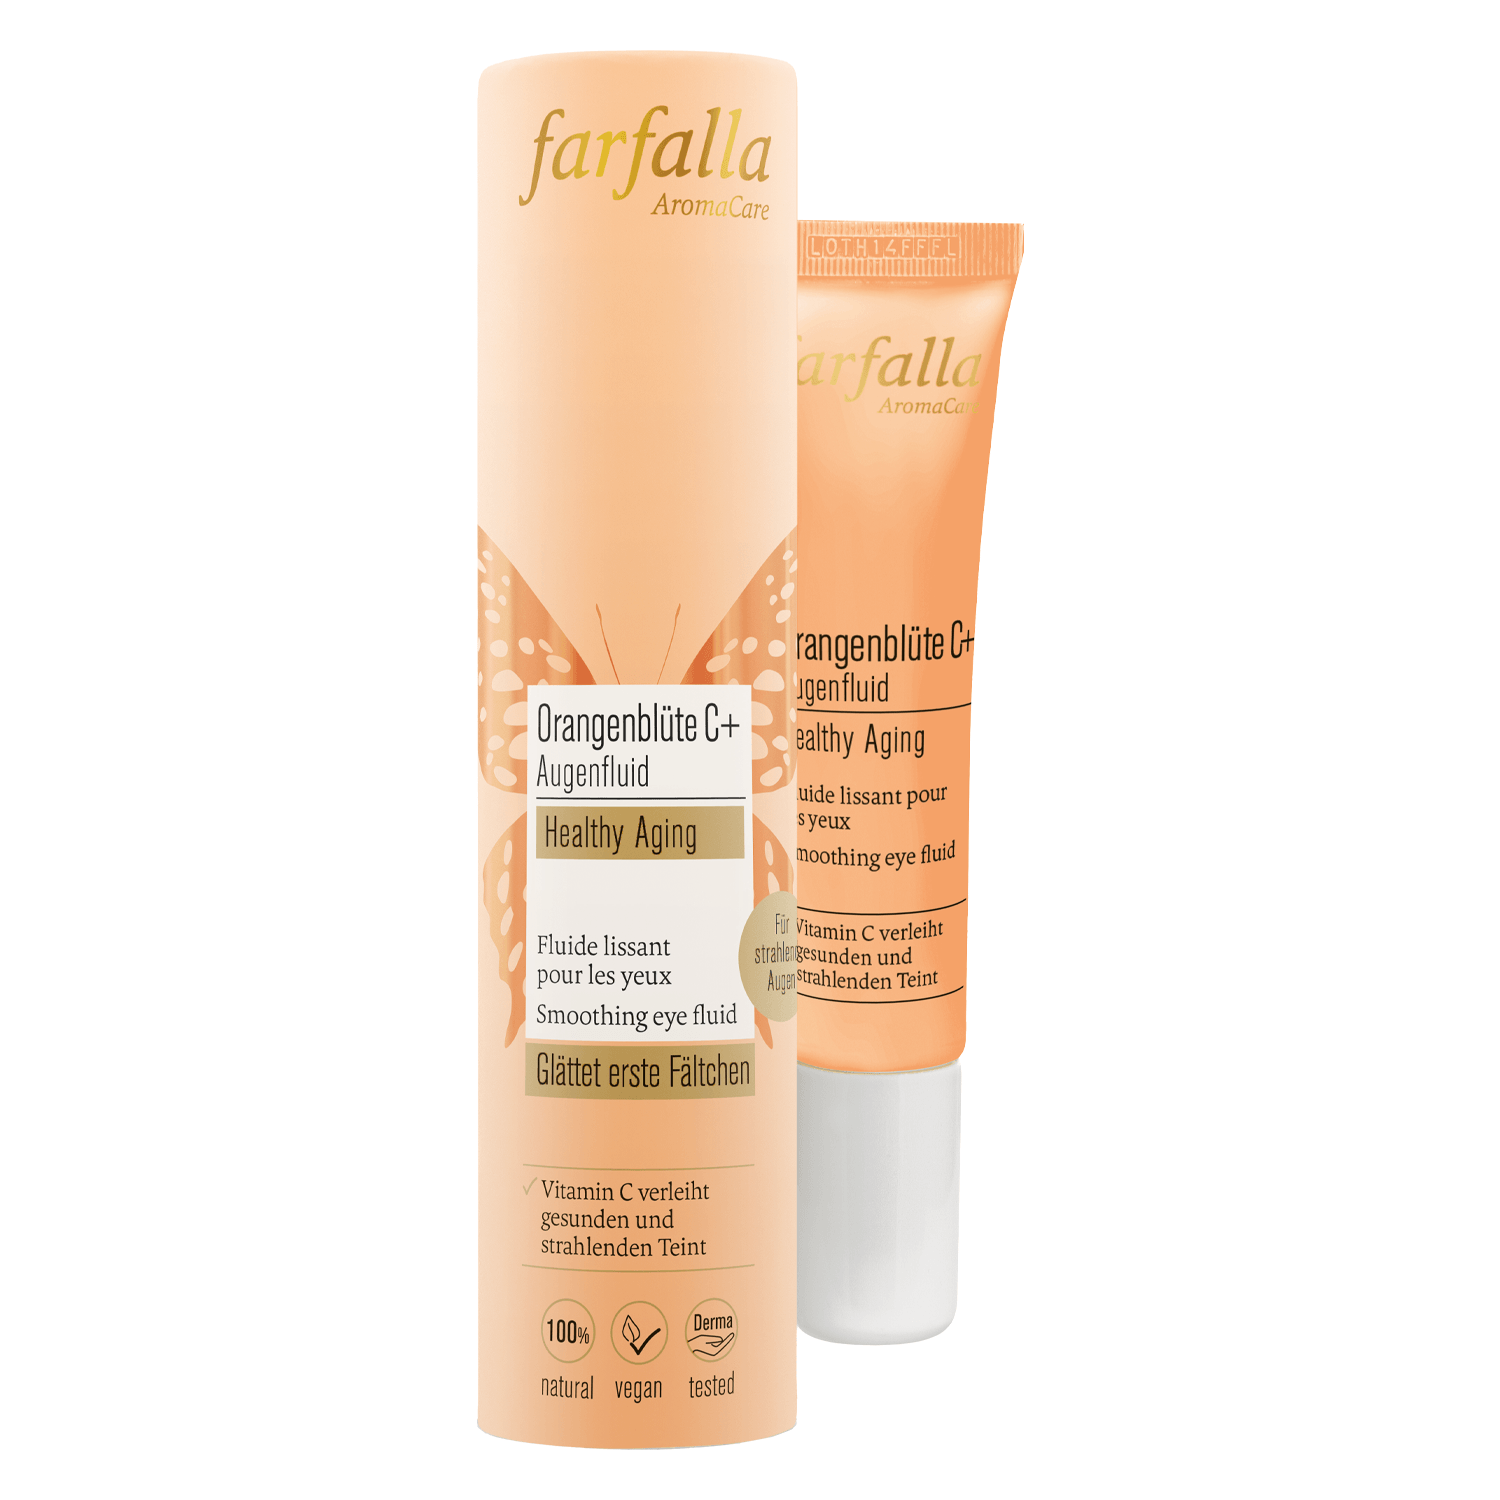 Produktbild von Farfalla Care - Orangenblüte C+ Augenfluid Healthy Aging